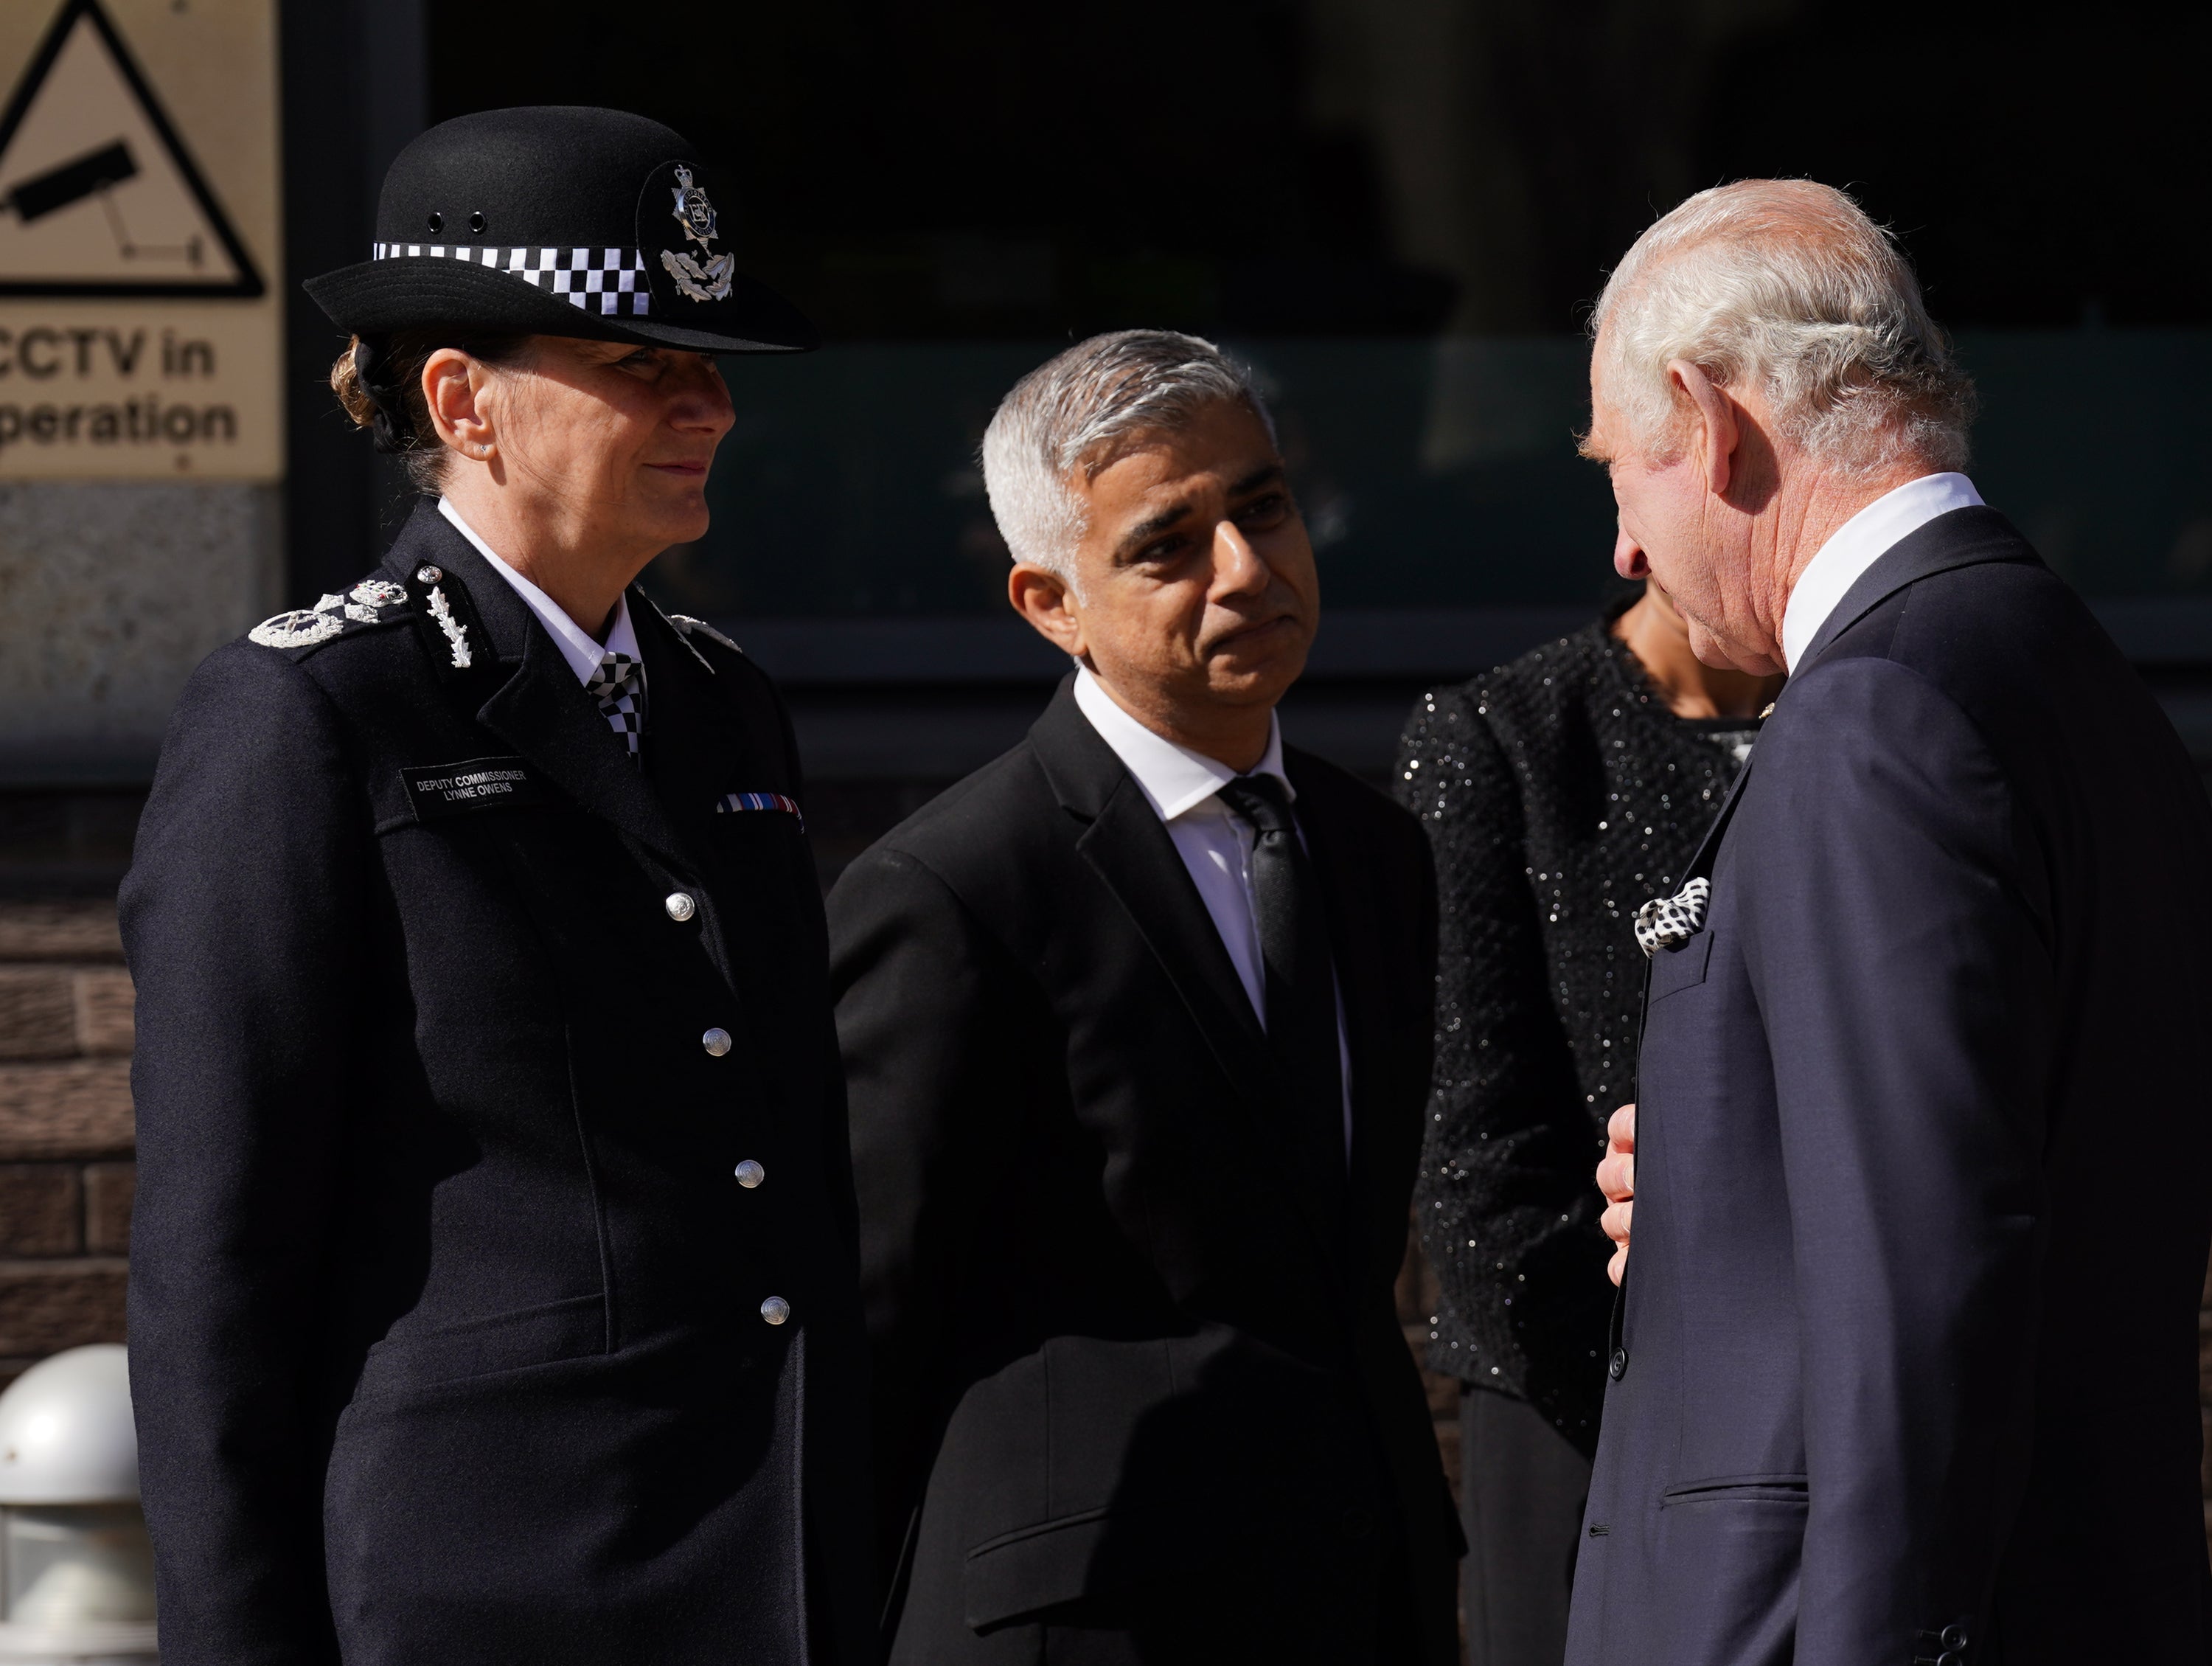 El rey habla con Dame Lynne Owens, la subcomisaria de la Policía Metropolitana y el alcalde de Londres Sadiq Khan (Kirsty O’Connor/PA)